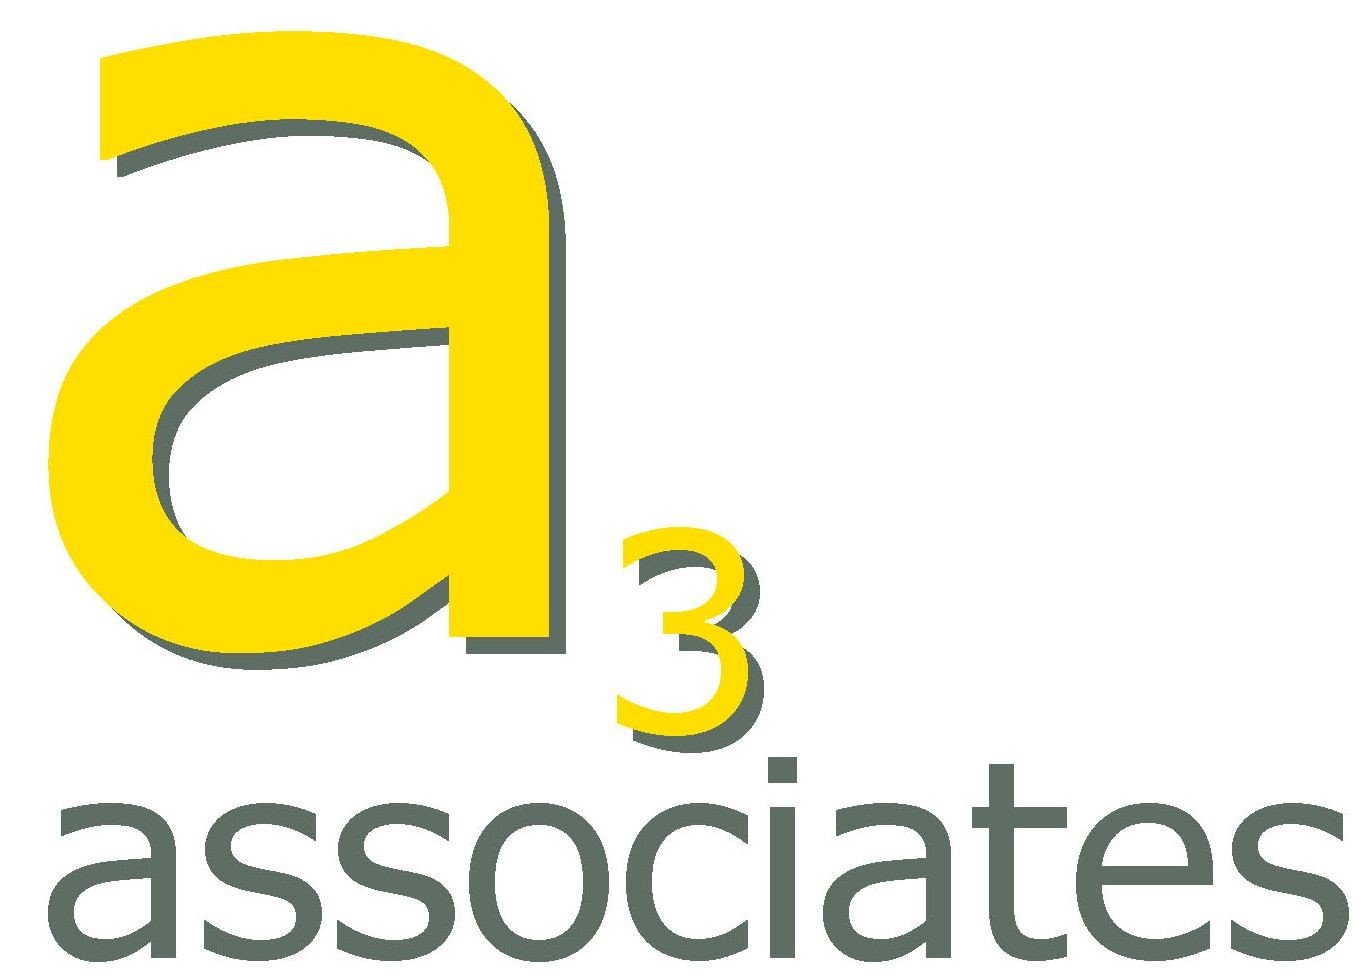 A3 Associates